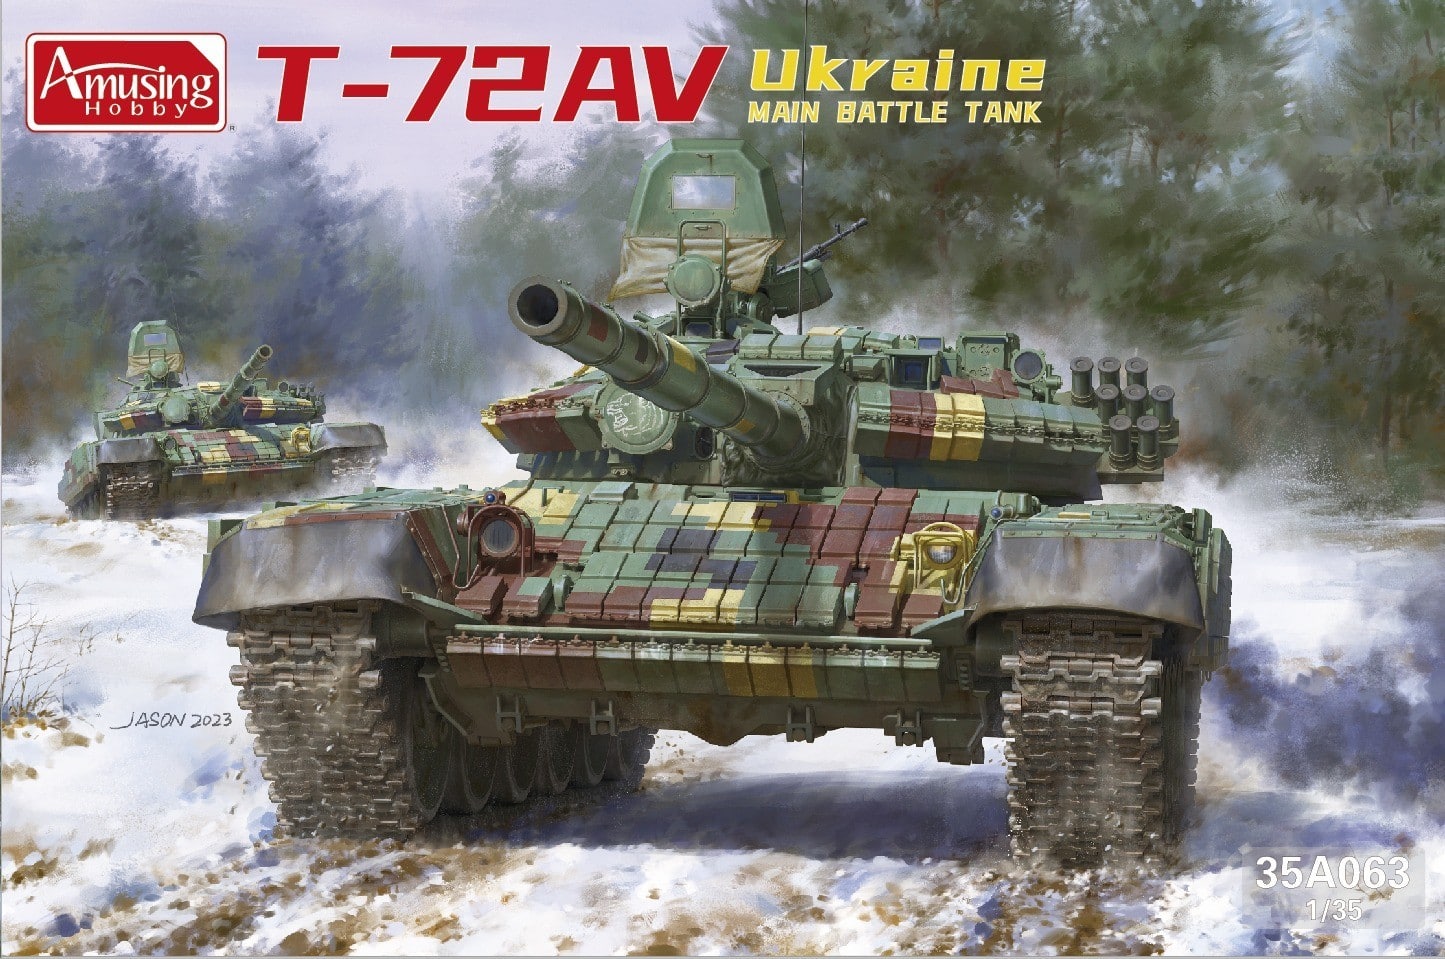 Amusing Hobby T-72AV Ukraine MBT 